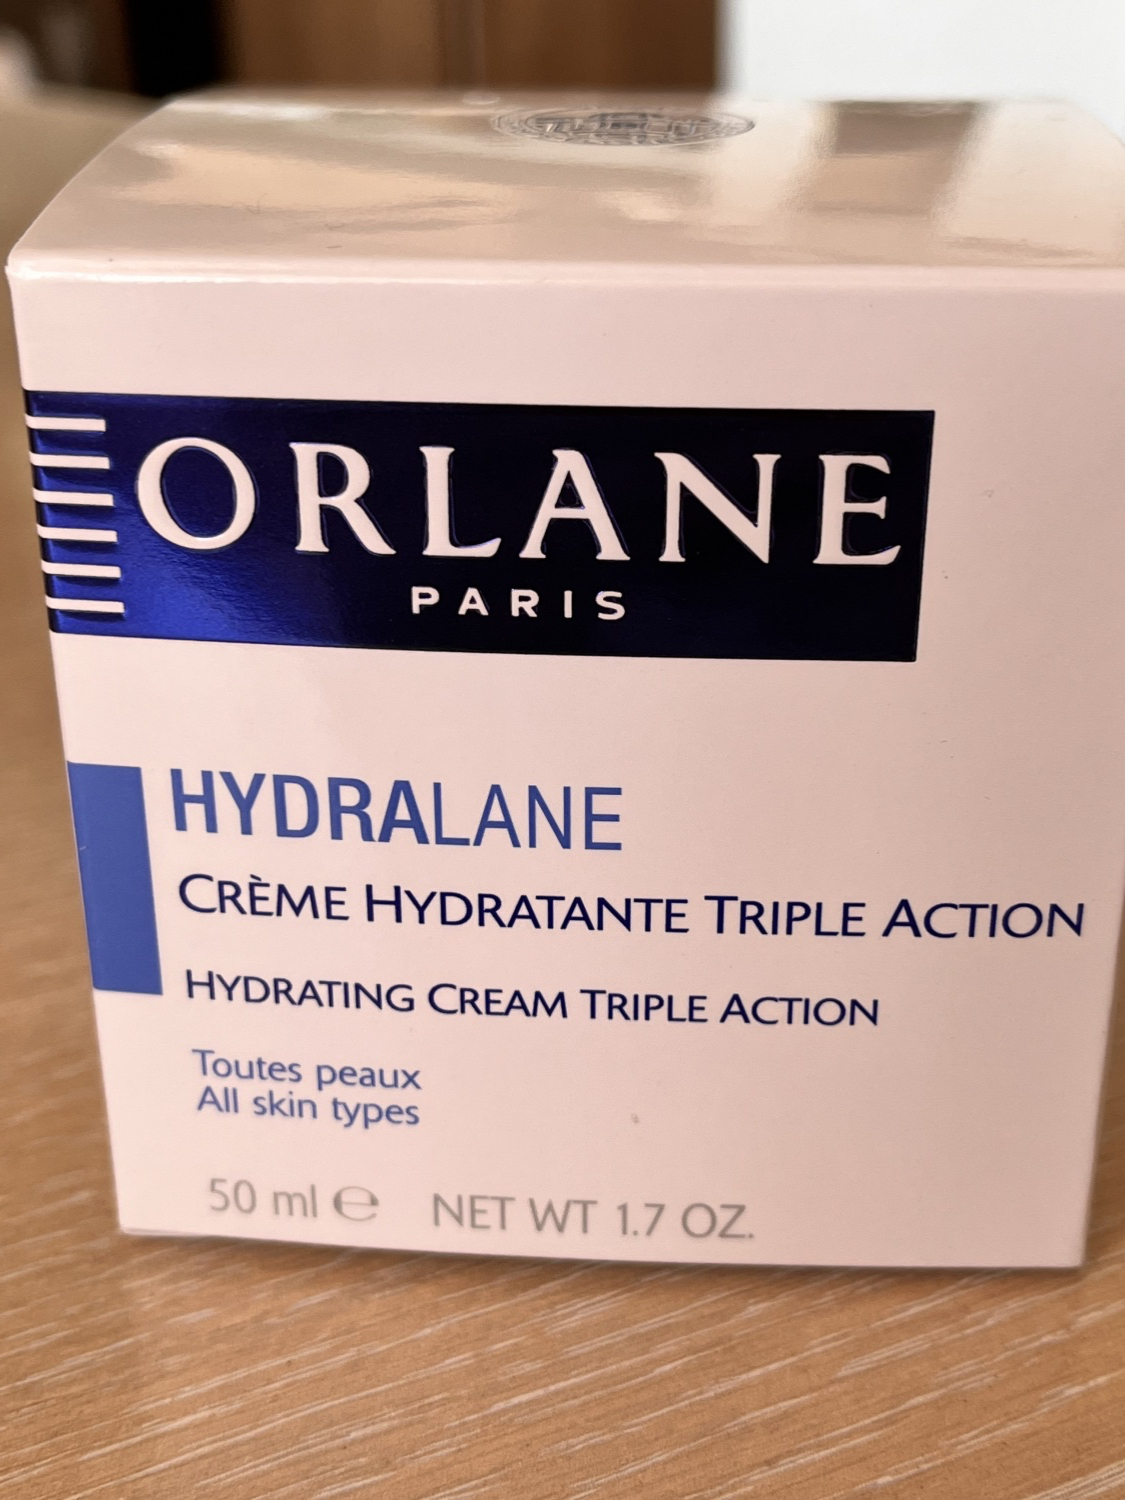 Крем для лица Orlane Paris Hydralane Creme Hydratante Triple Action отзывы 0608